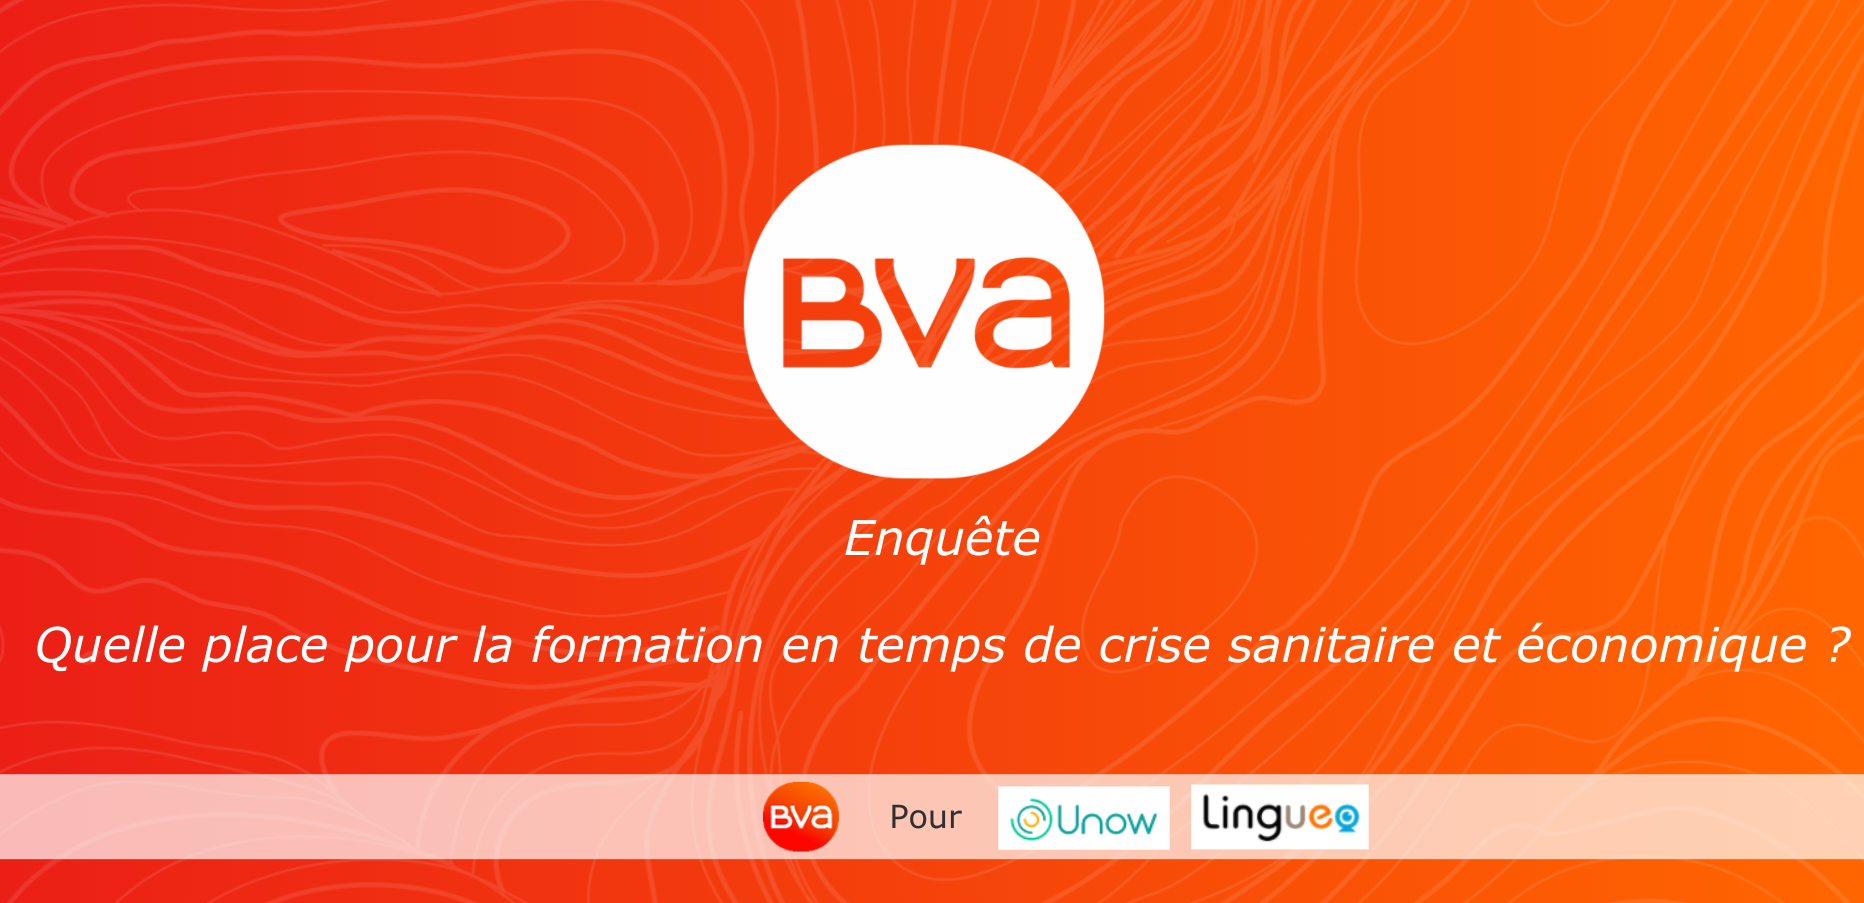 Enquête BVA - Lingueo - Unow